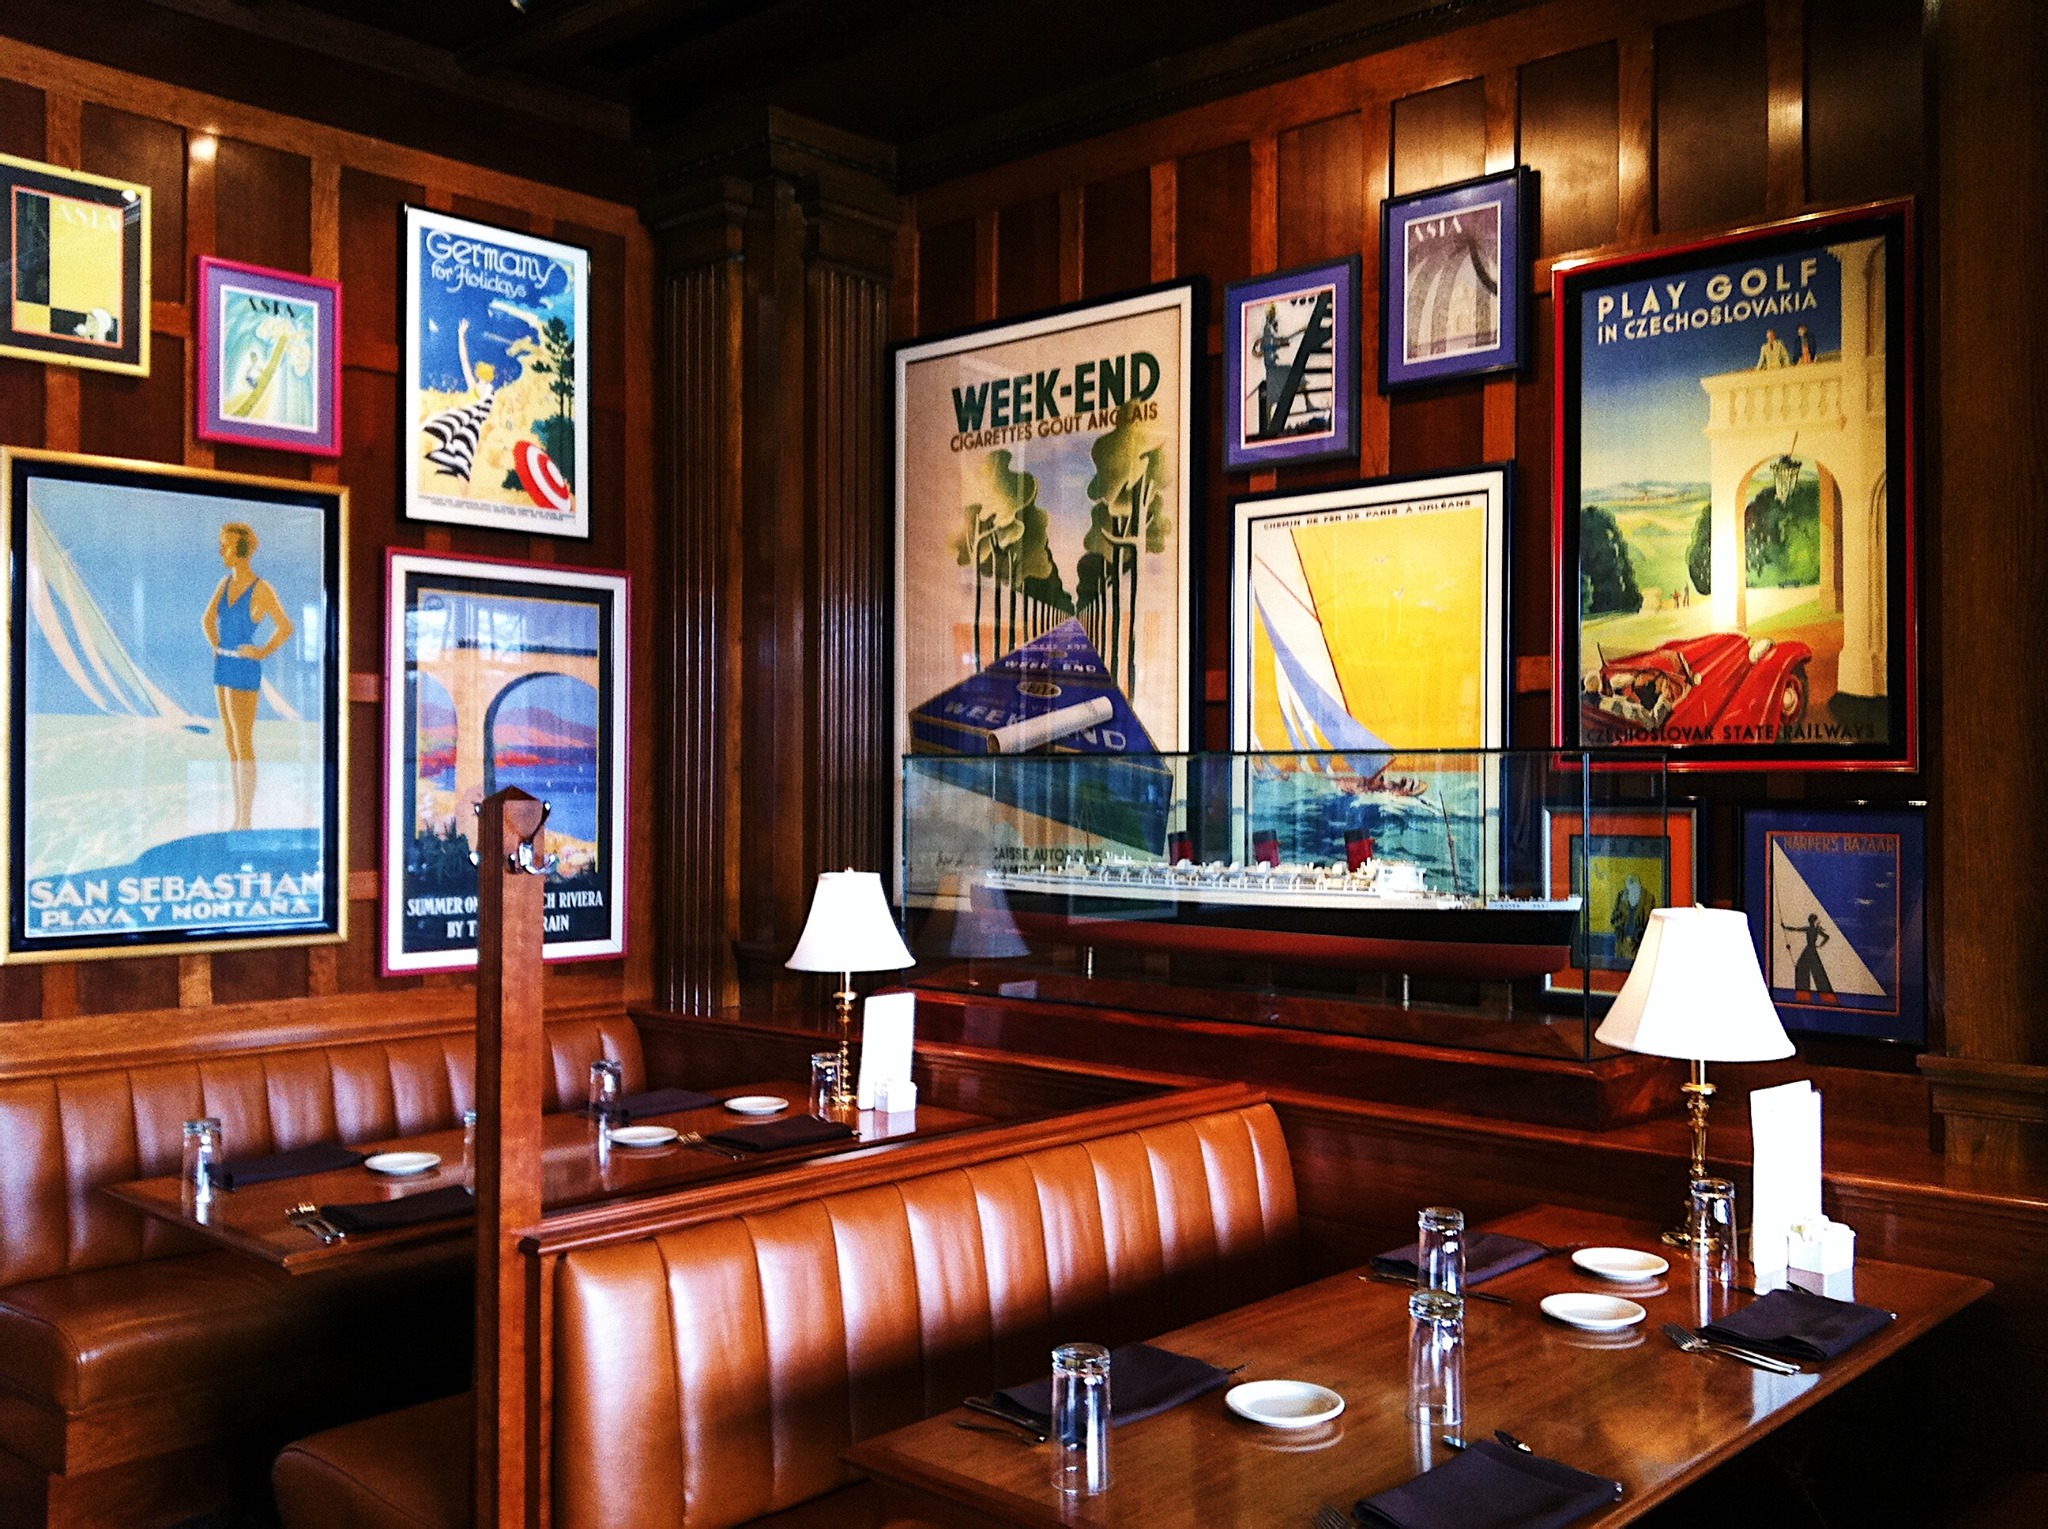 RL Restaurant Chicago Restaurant on Best Steakhouse Restaurants. 2023